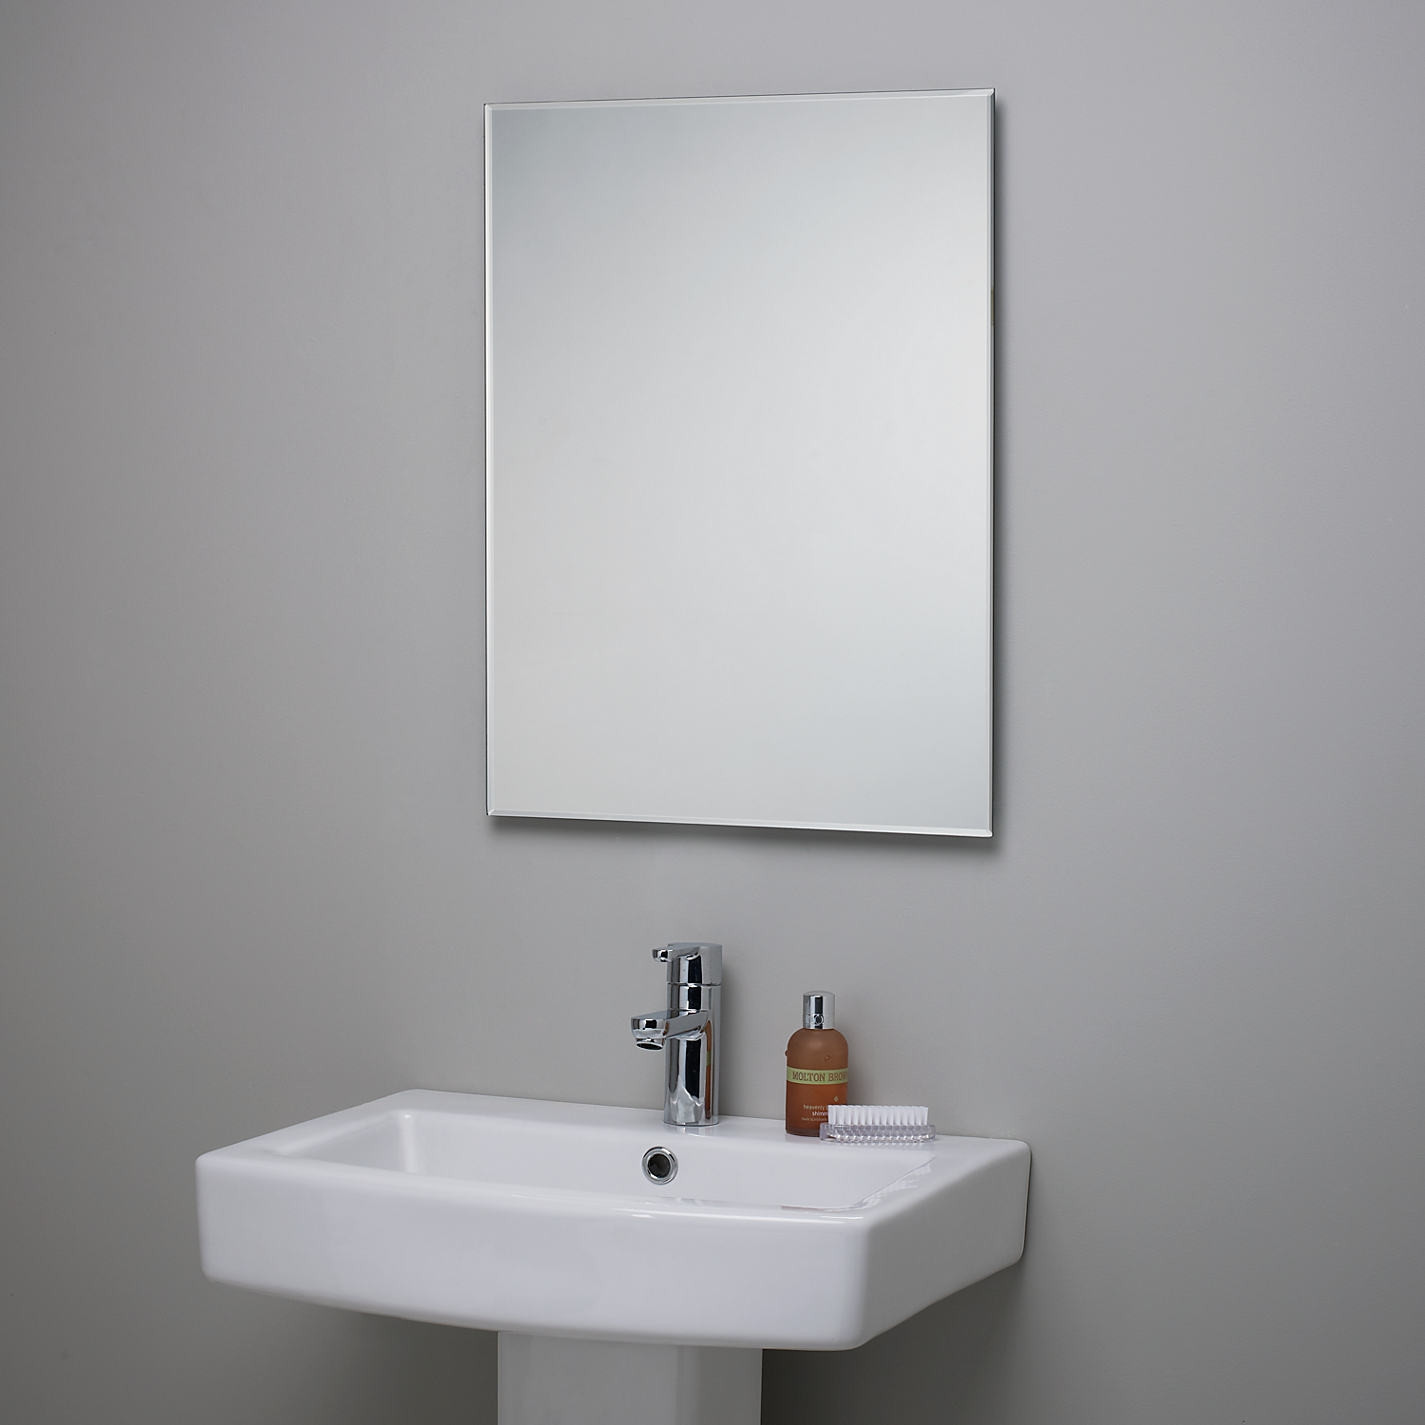 Bathroom Mirror Installation
 15 Best Ideas Bevelled Bathroom Mirror